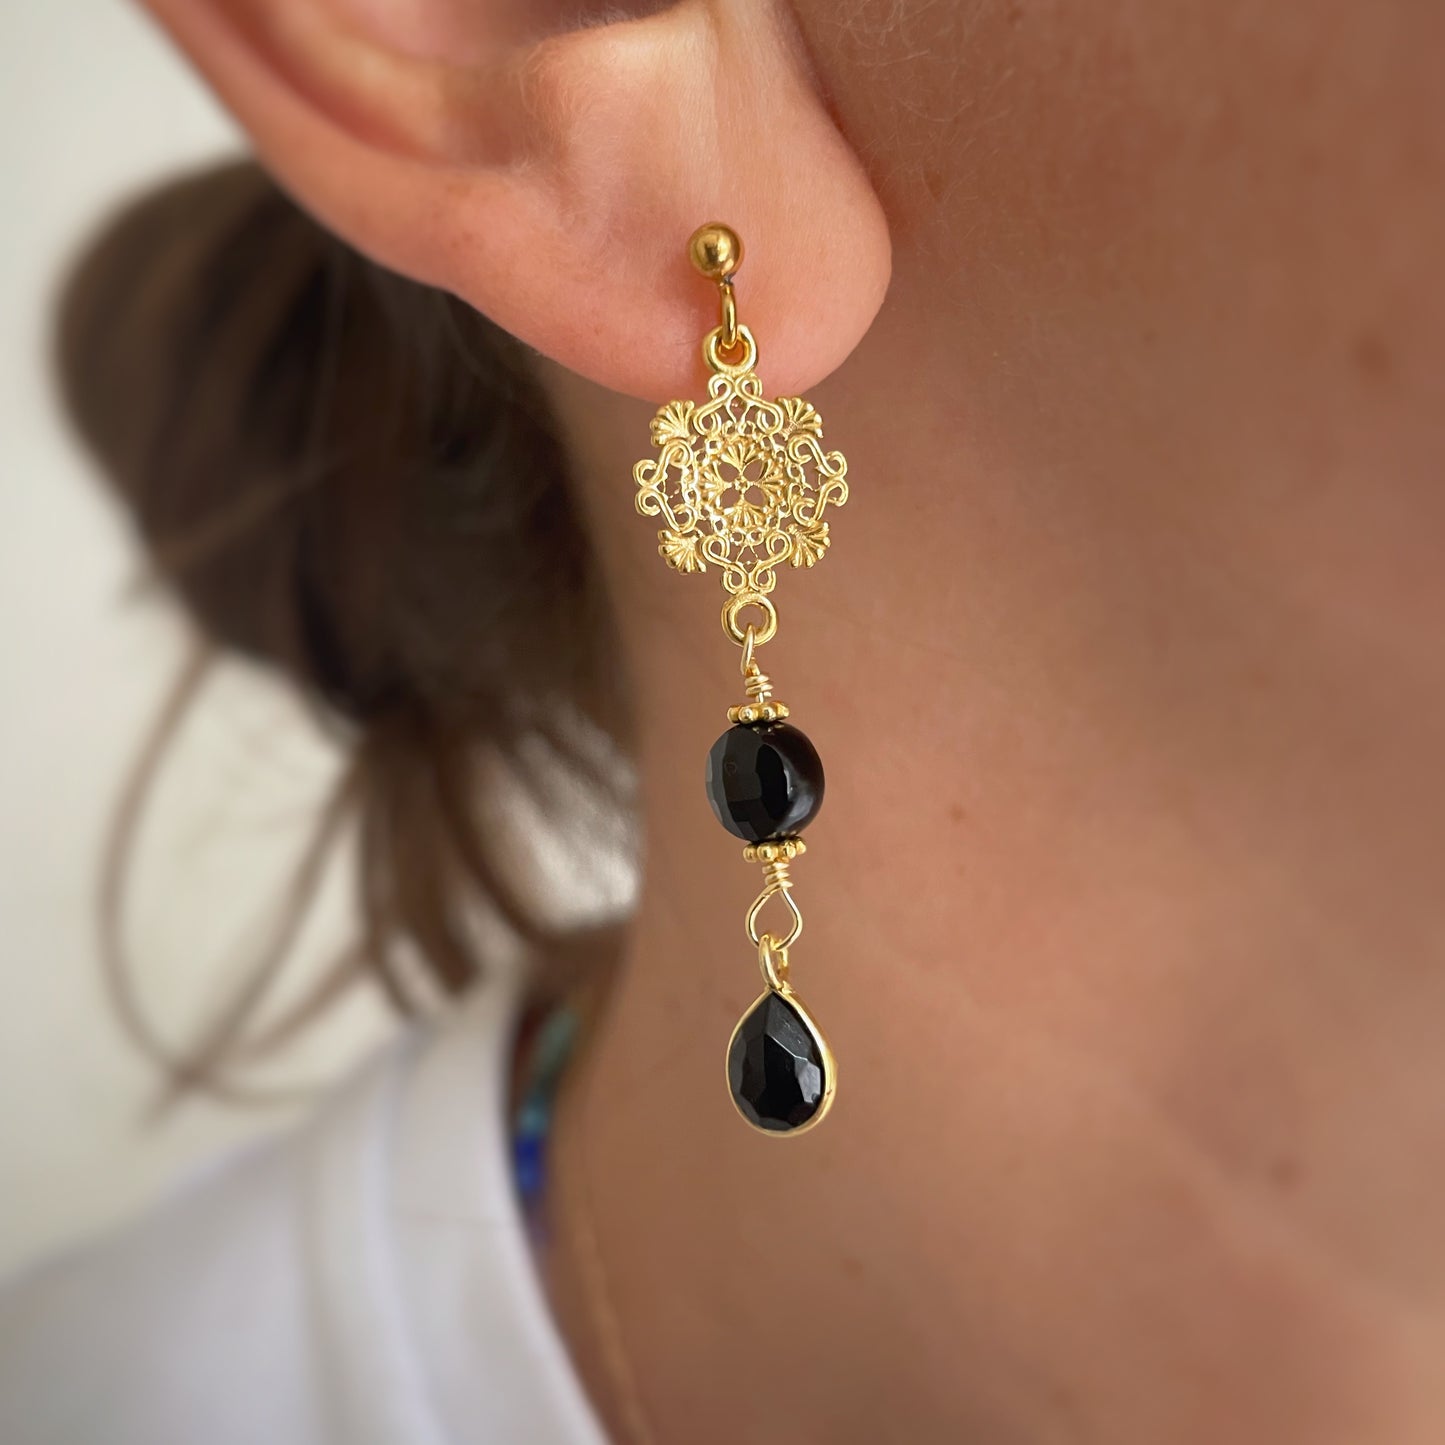 Ciara earrings